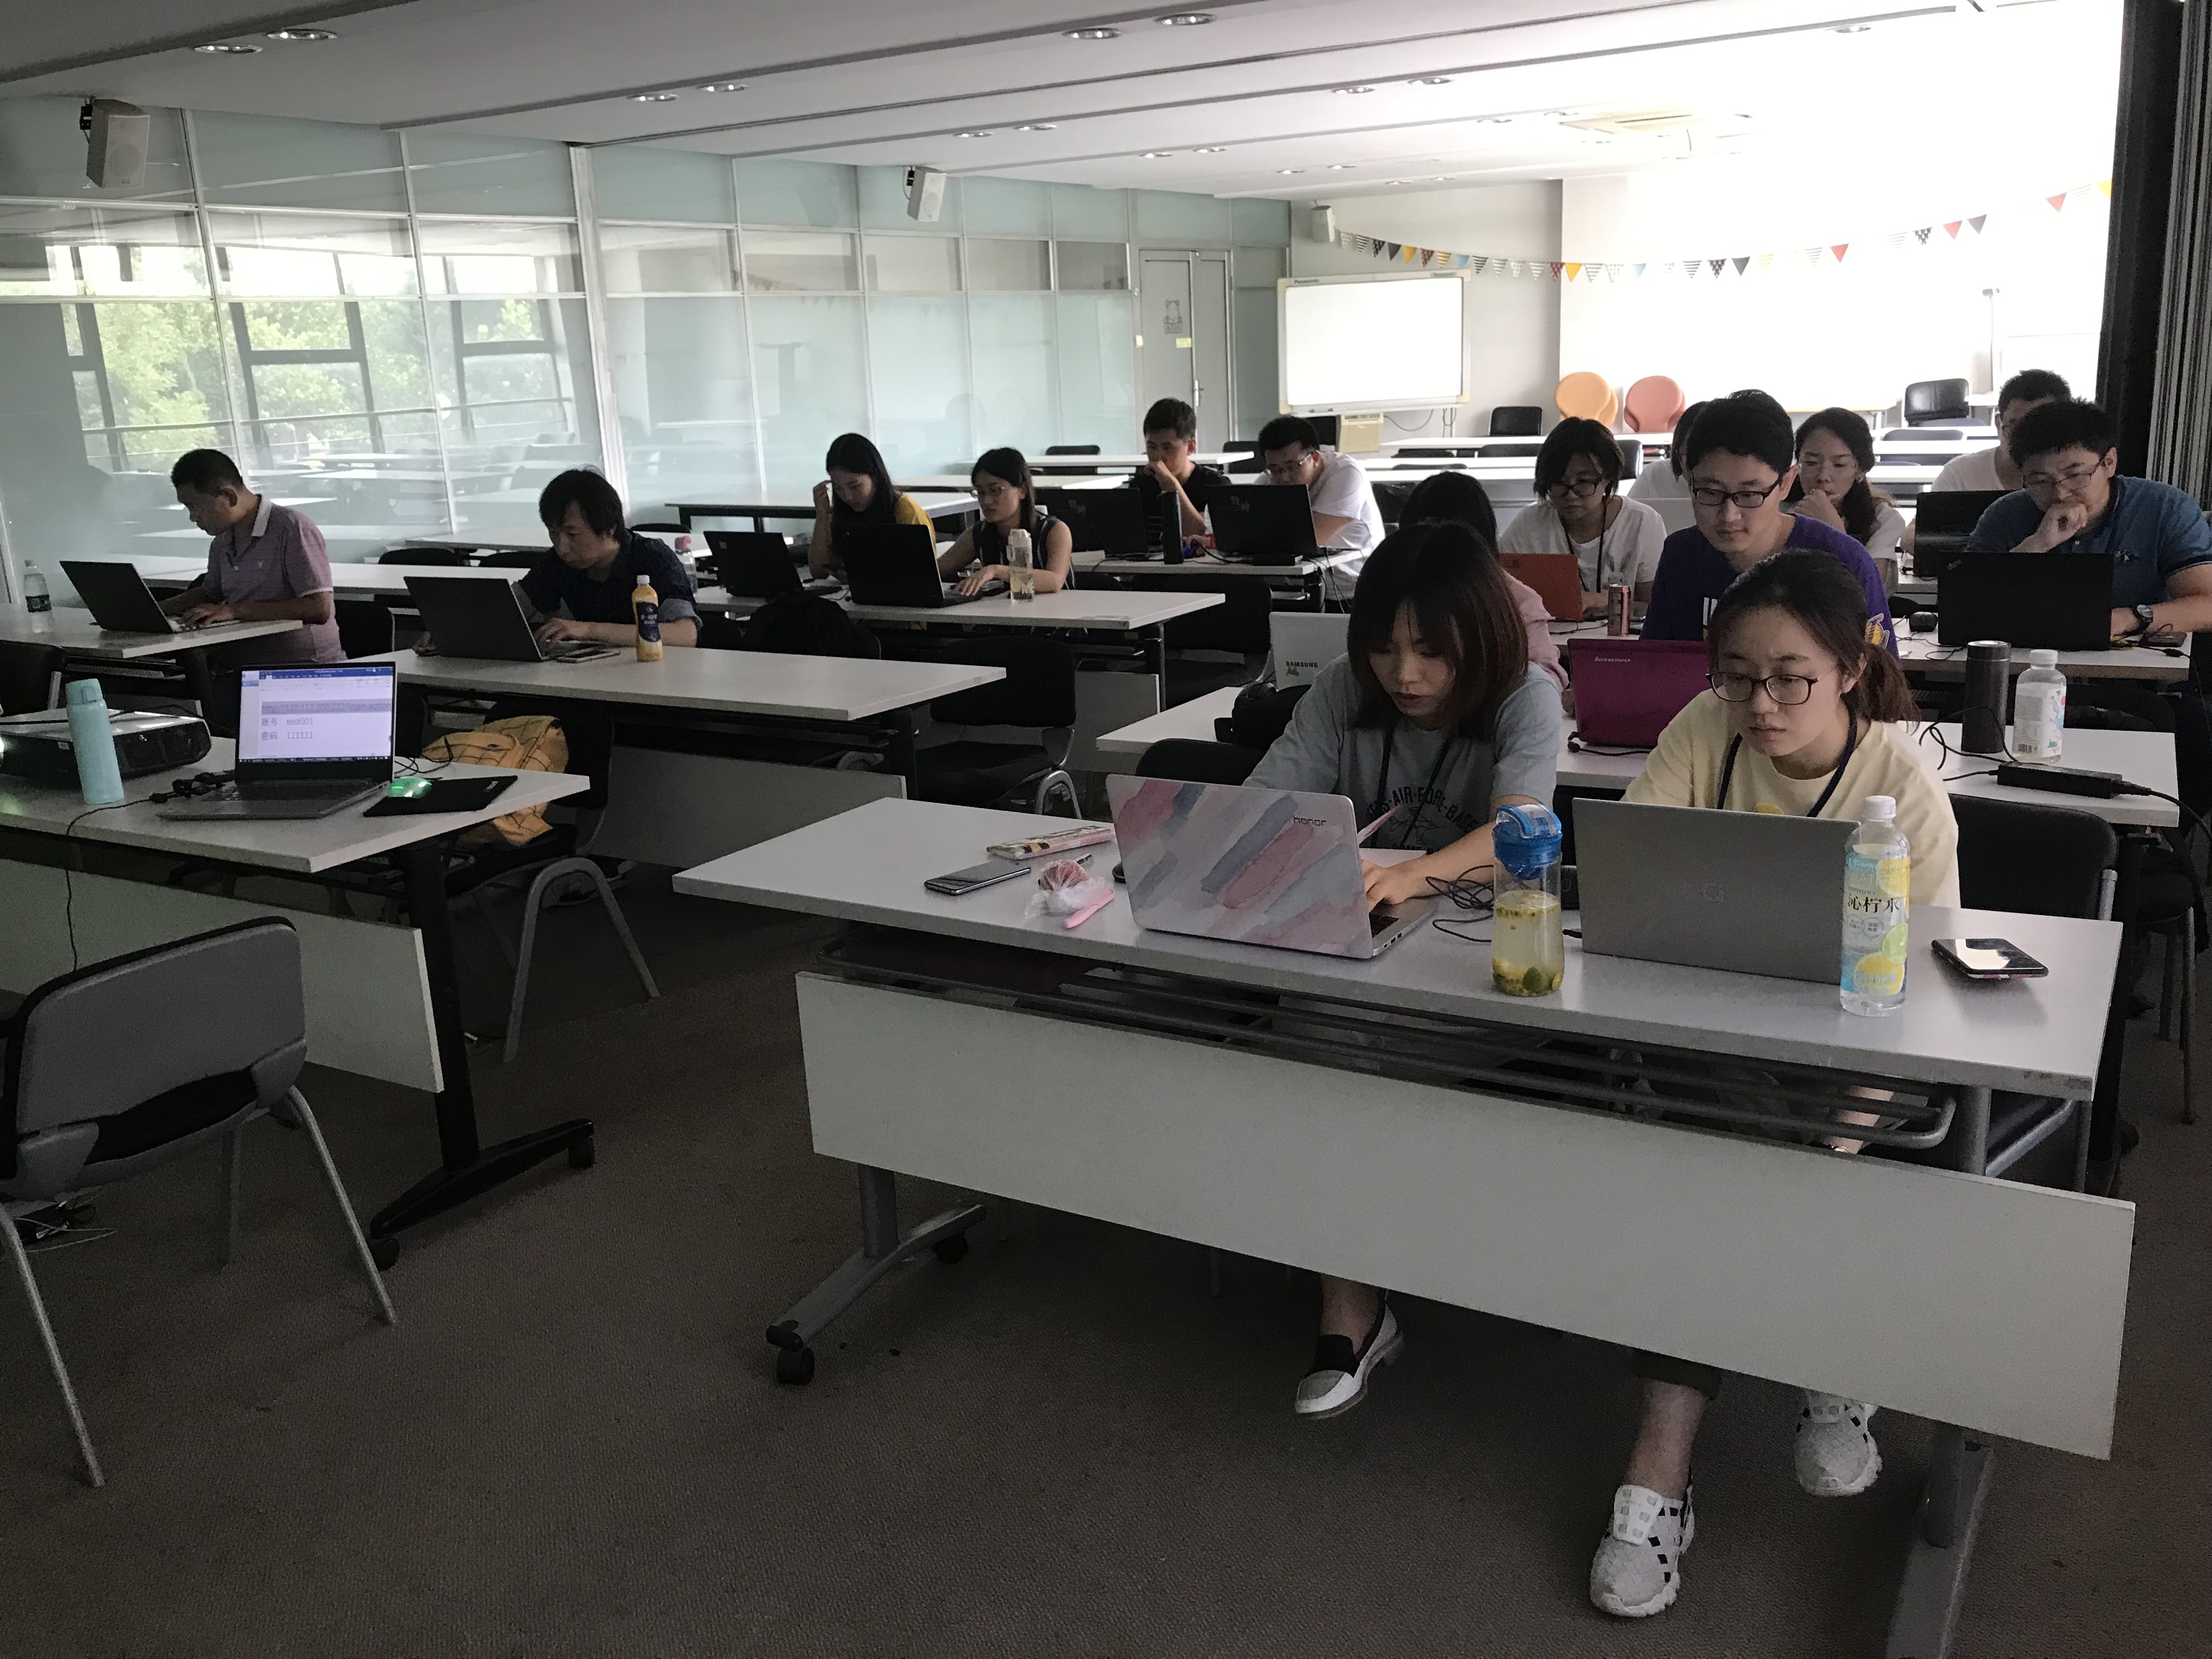 iS-RPA 技术认证培训 - 天津 20190620 班 - 培训开始